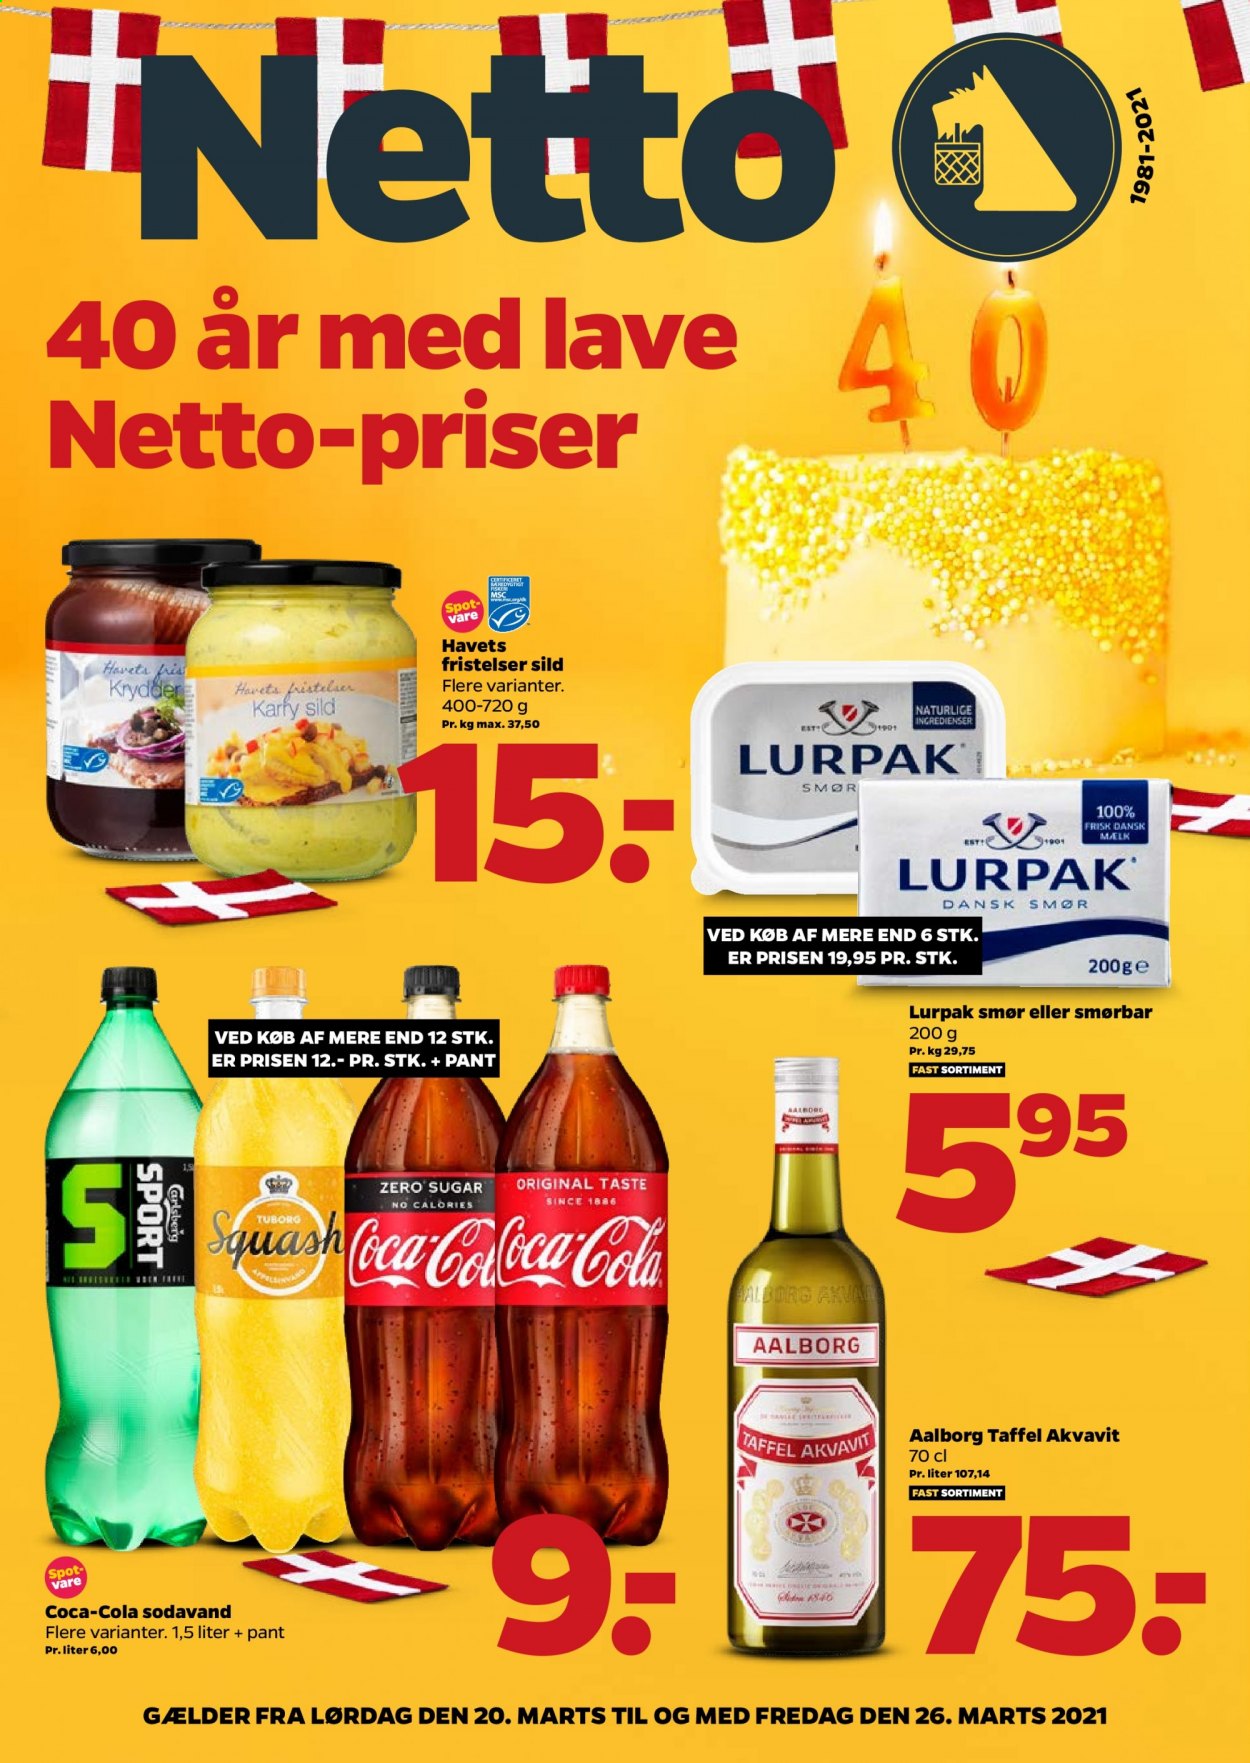 thumbnail - Netto tilbud  - 20.3.2021 - 26.3.2021 - tilbudsprodukter - Squash, Carlsberg, øl, sild, smør, Lurpak, smørbar, Coca-Cola, sodavand, Aalborg, akvavit. Side 1.